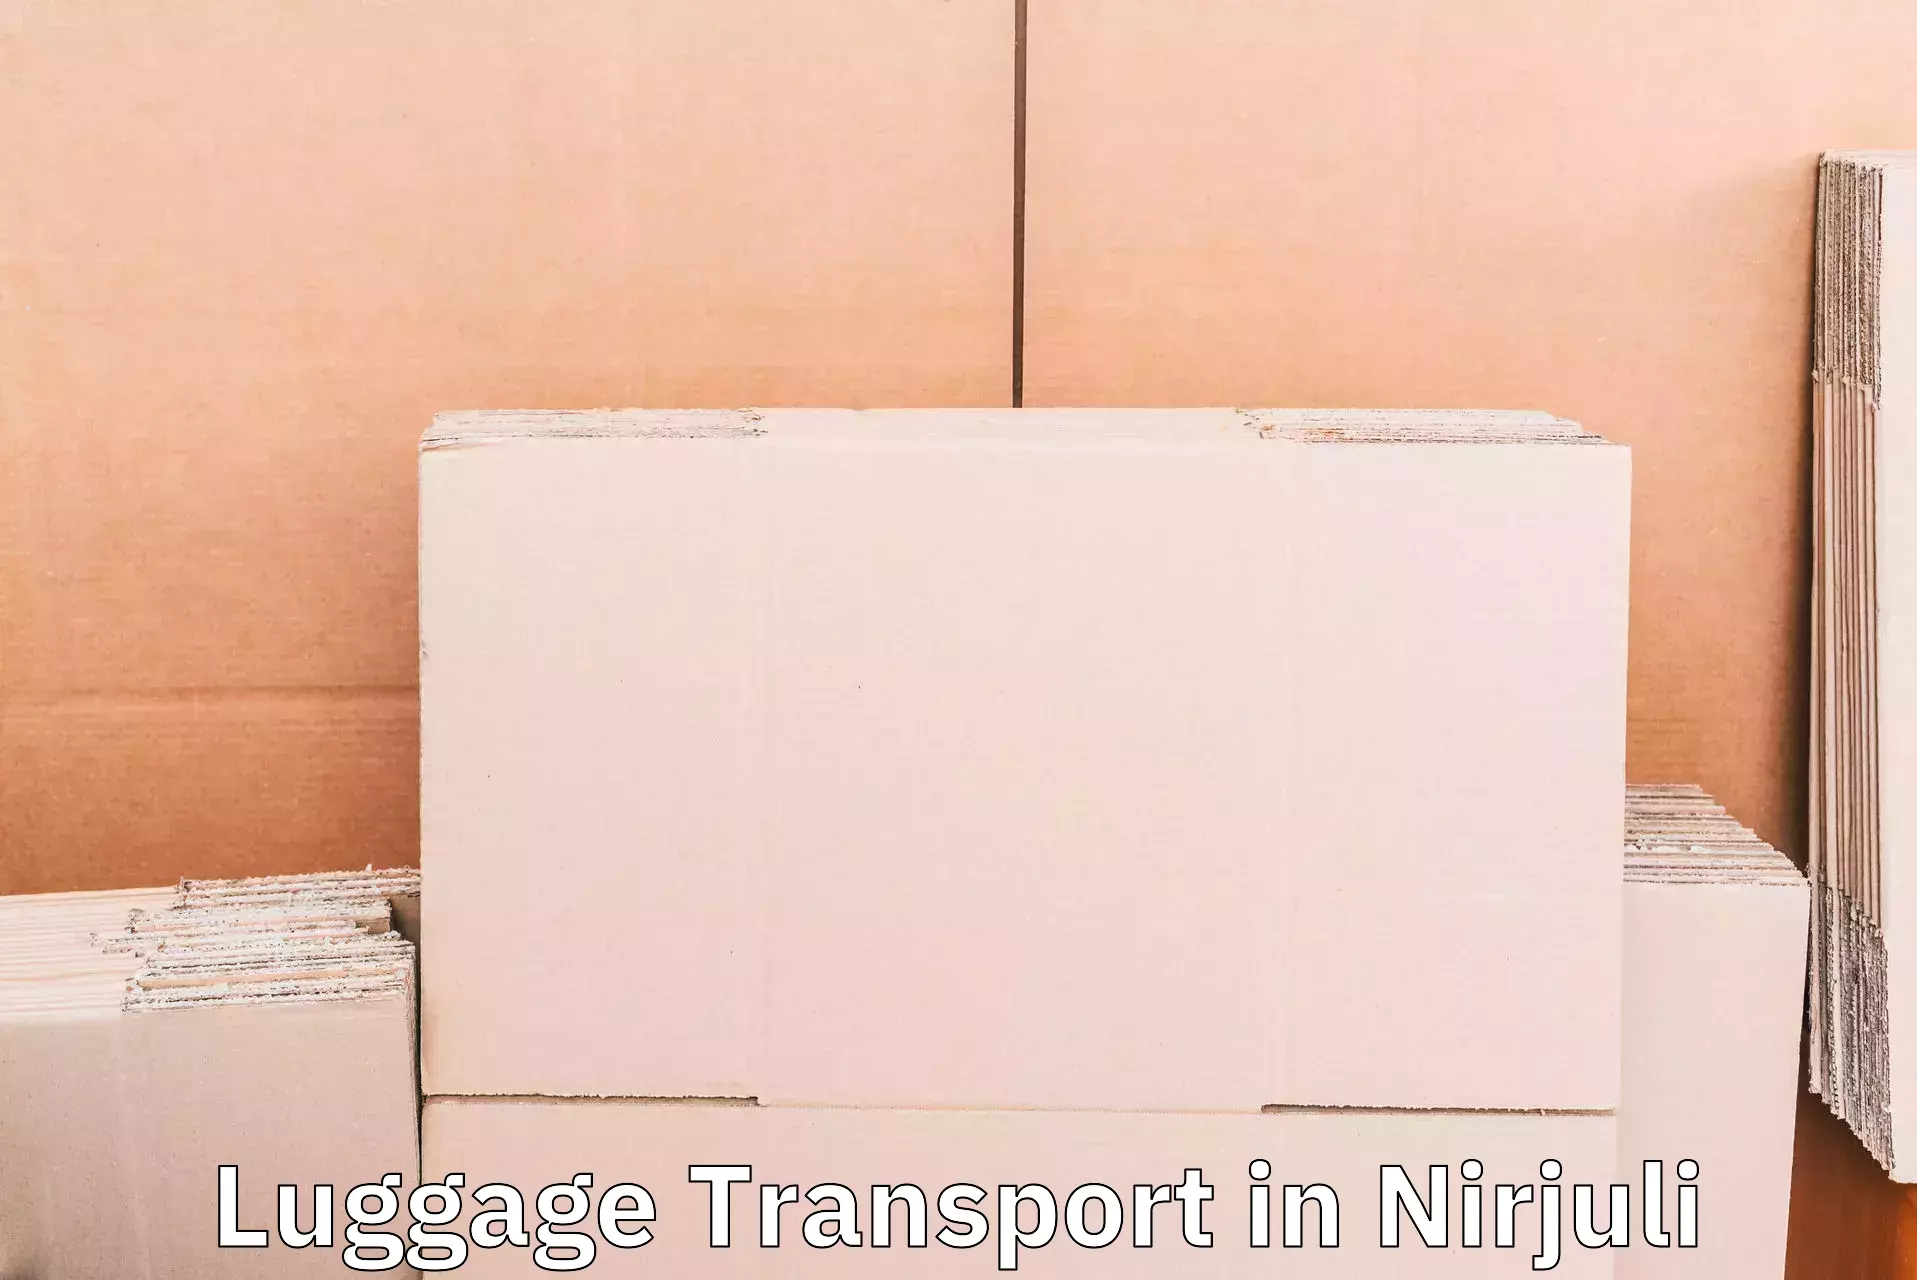 Luggage shipping estimate in Nirjuli